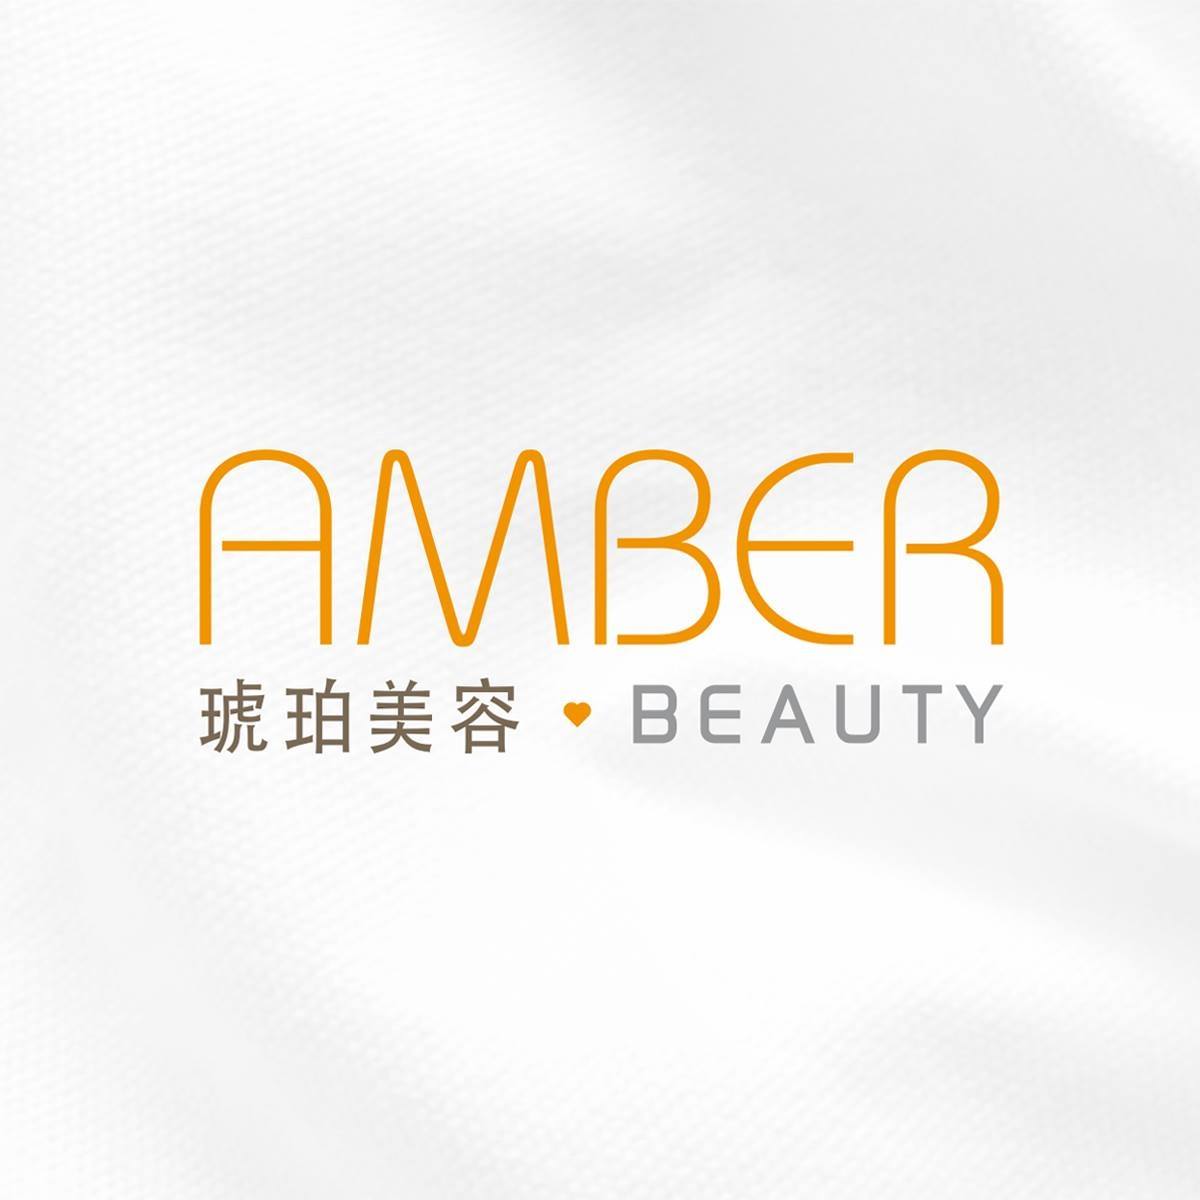 美容院 Beauty Salon: 琥珀美容 Amber Beauty (銅鑼灣店)